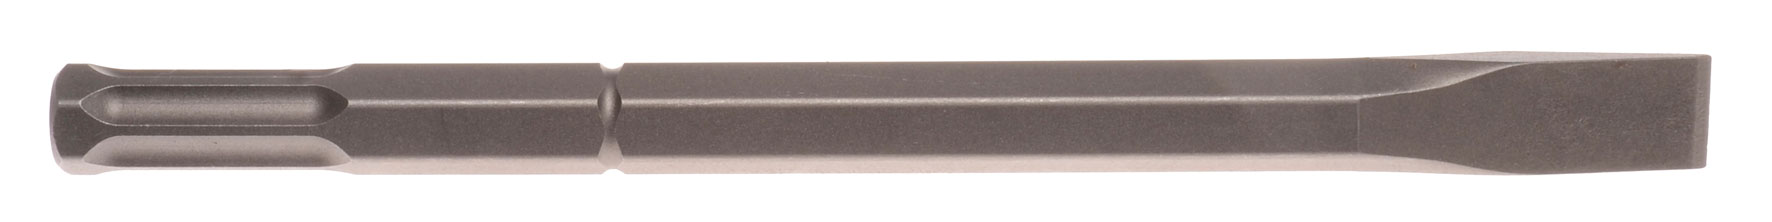 Flachmeißel Schaft 22 mm 6-kant mit 6 Nuten